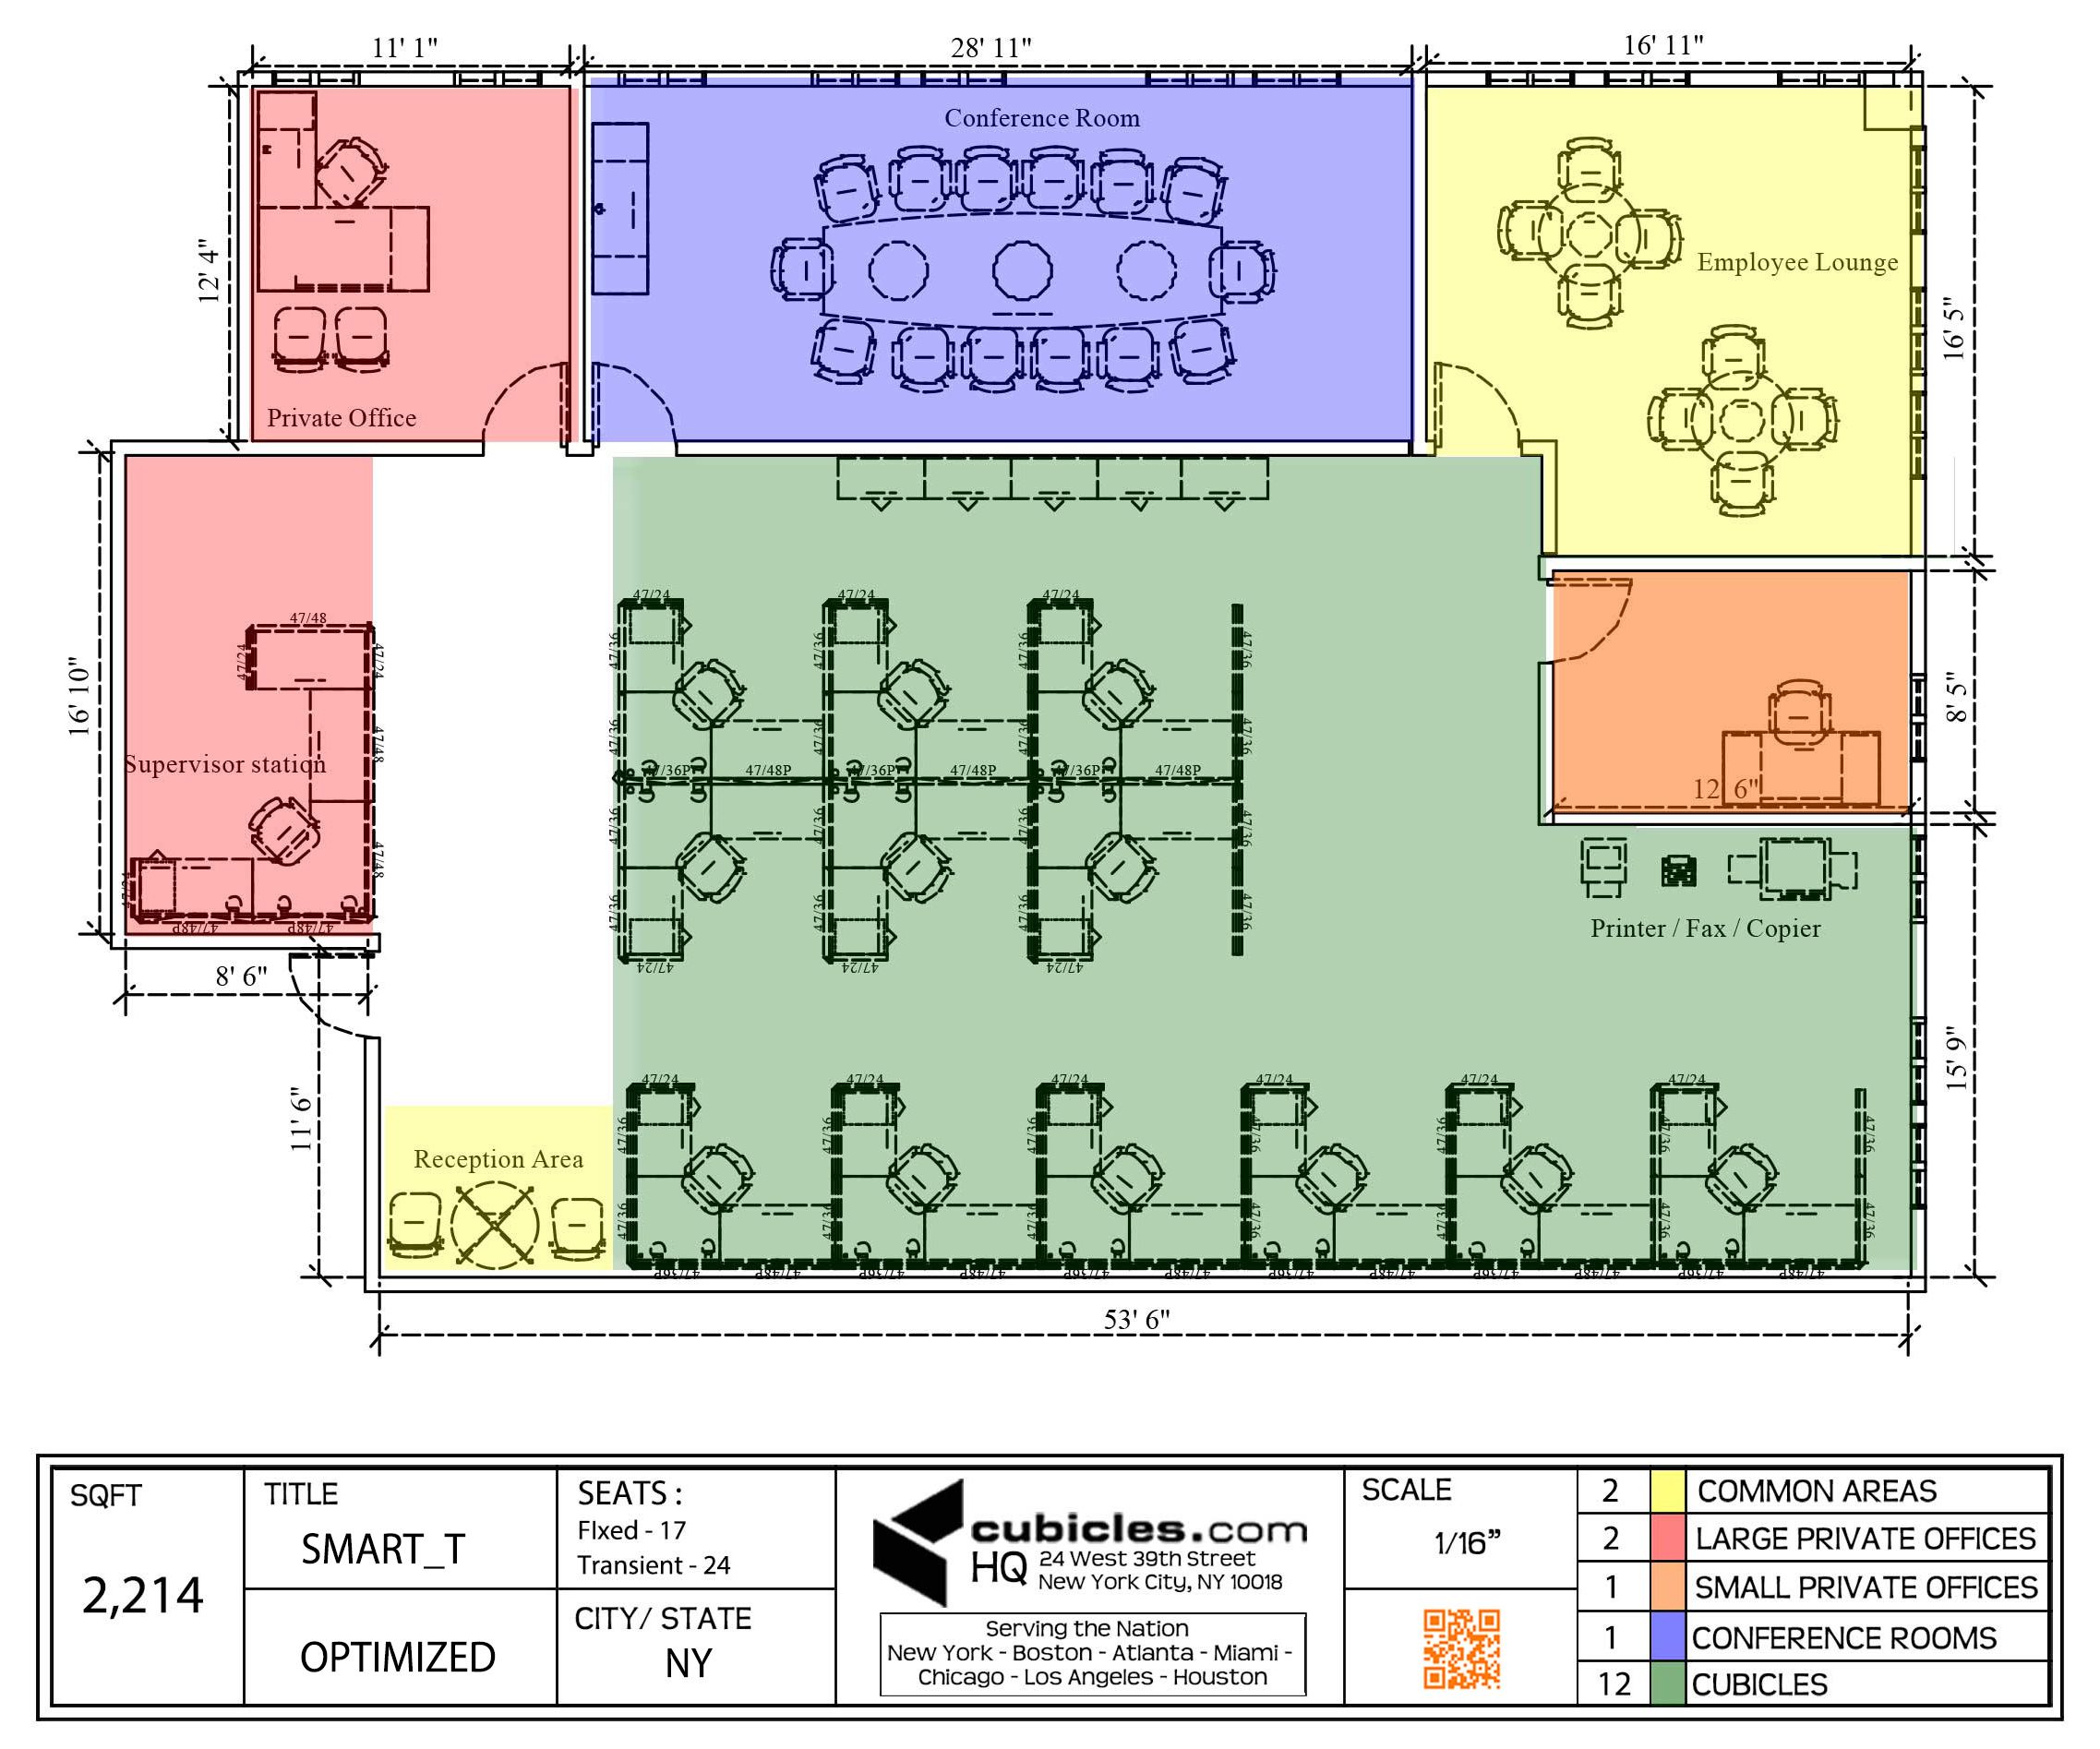 Office Layout Plan Office layout plan, Office floor plan